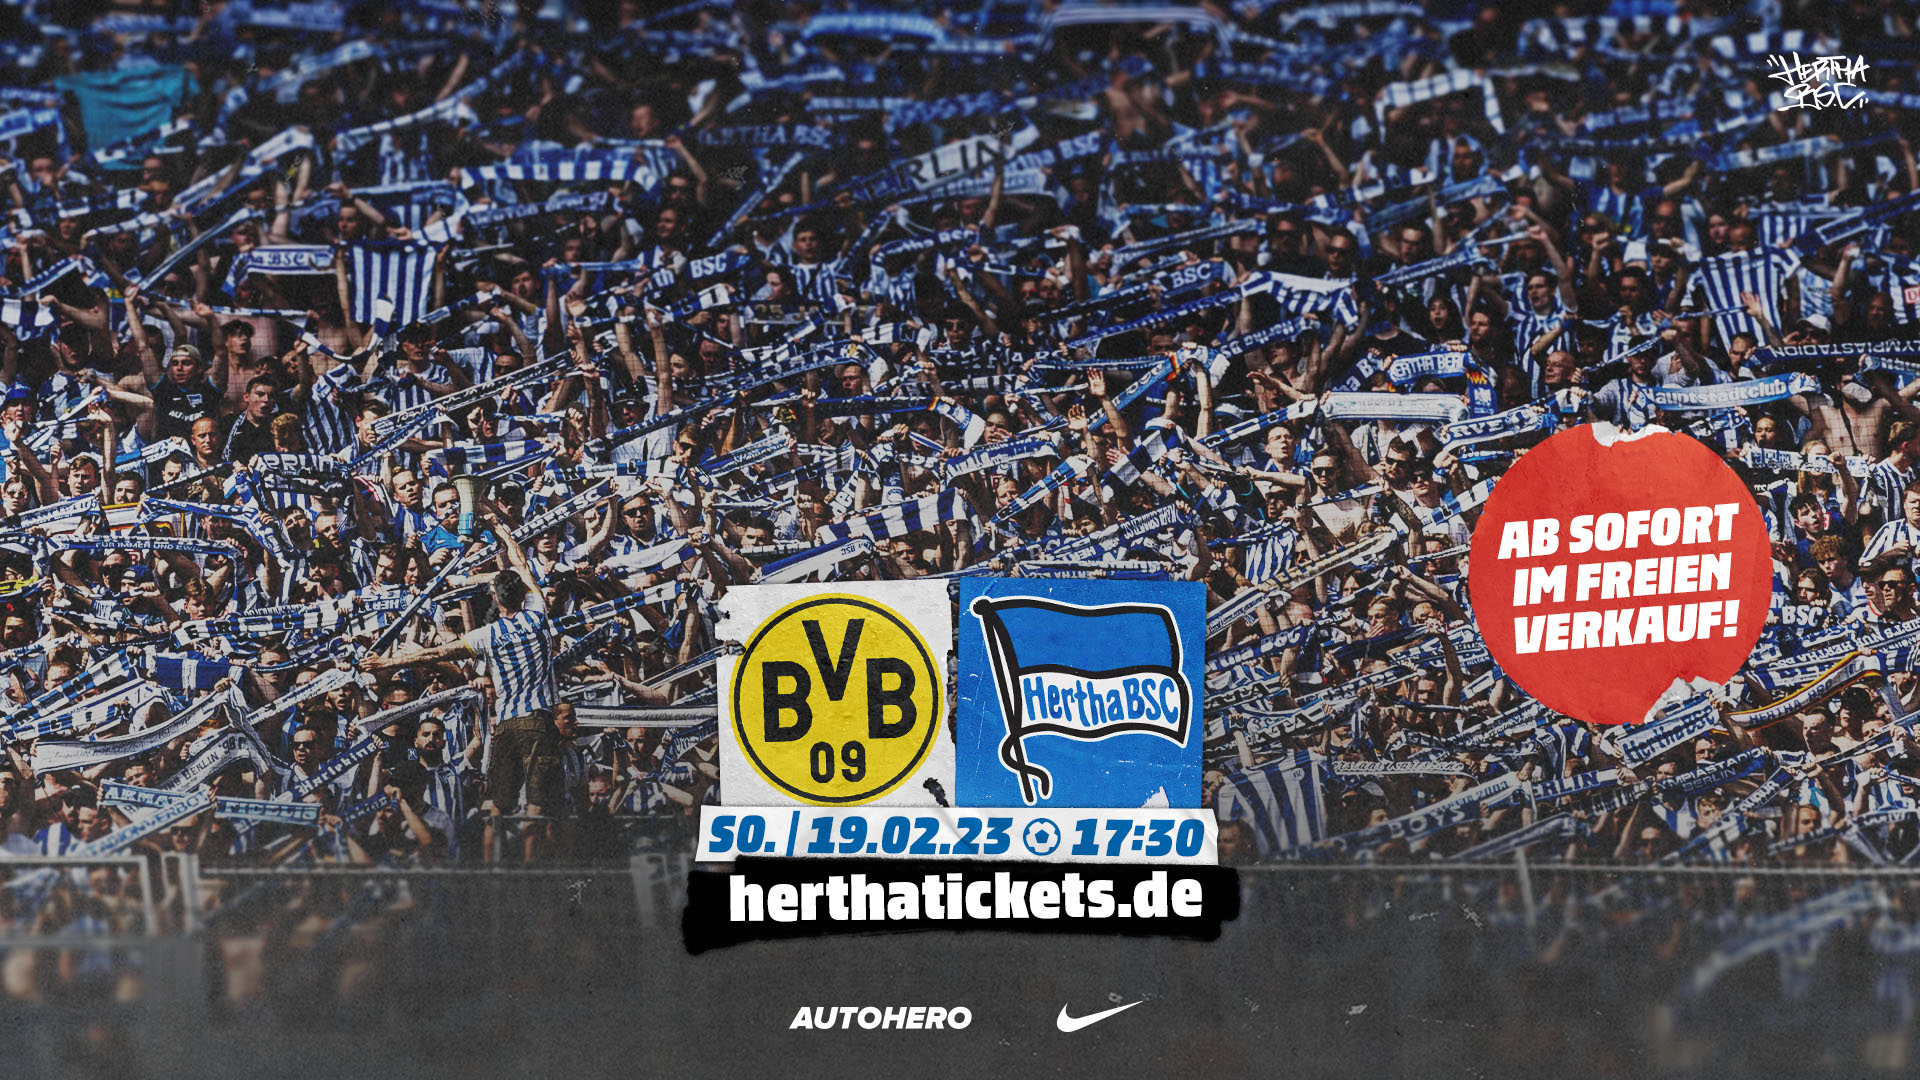 Die Logos von Borussia Dortmund Hertha BSC mit dem Störer "Ab sofort im freien Verkauf"!